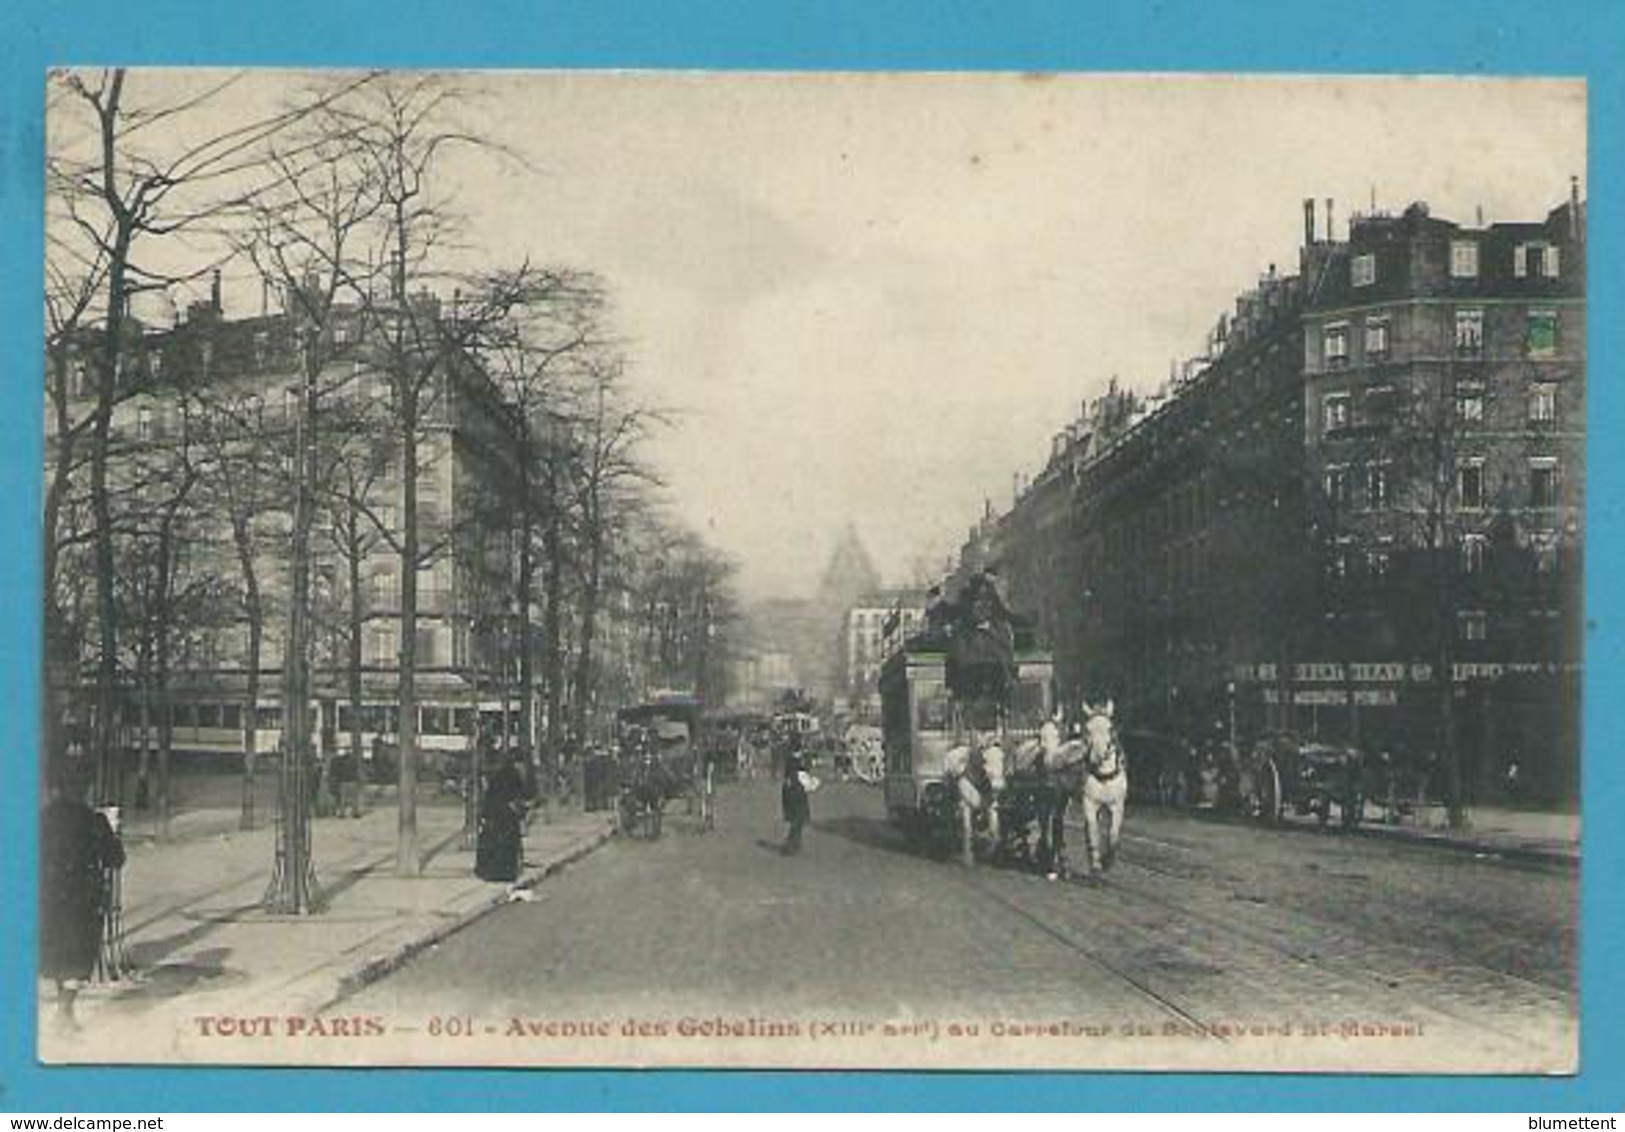 CPA TOUT PARIS 601 - Patache Attelage Avenue Des Gobelins Au Carrefour Du Bld St Marcel (XIIIème) - Arrondissement: 13